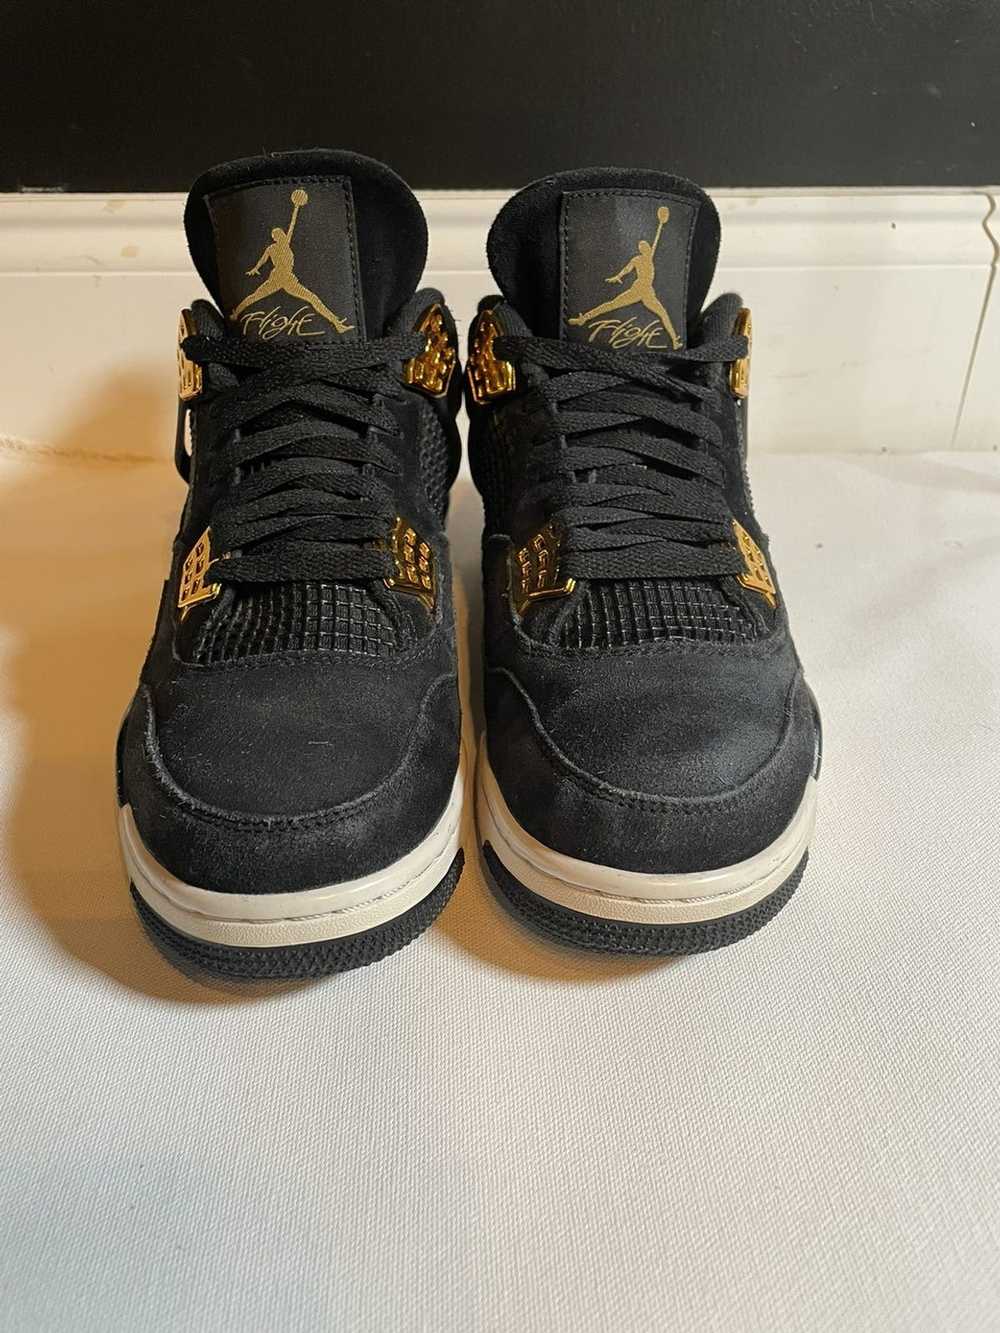 Jordan Brand × Nike Jordan 4 retro royalty - image 5